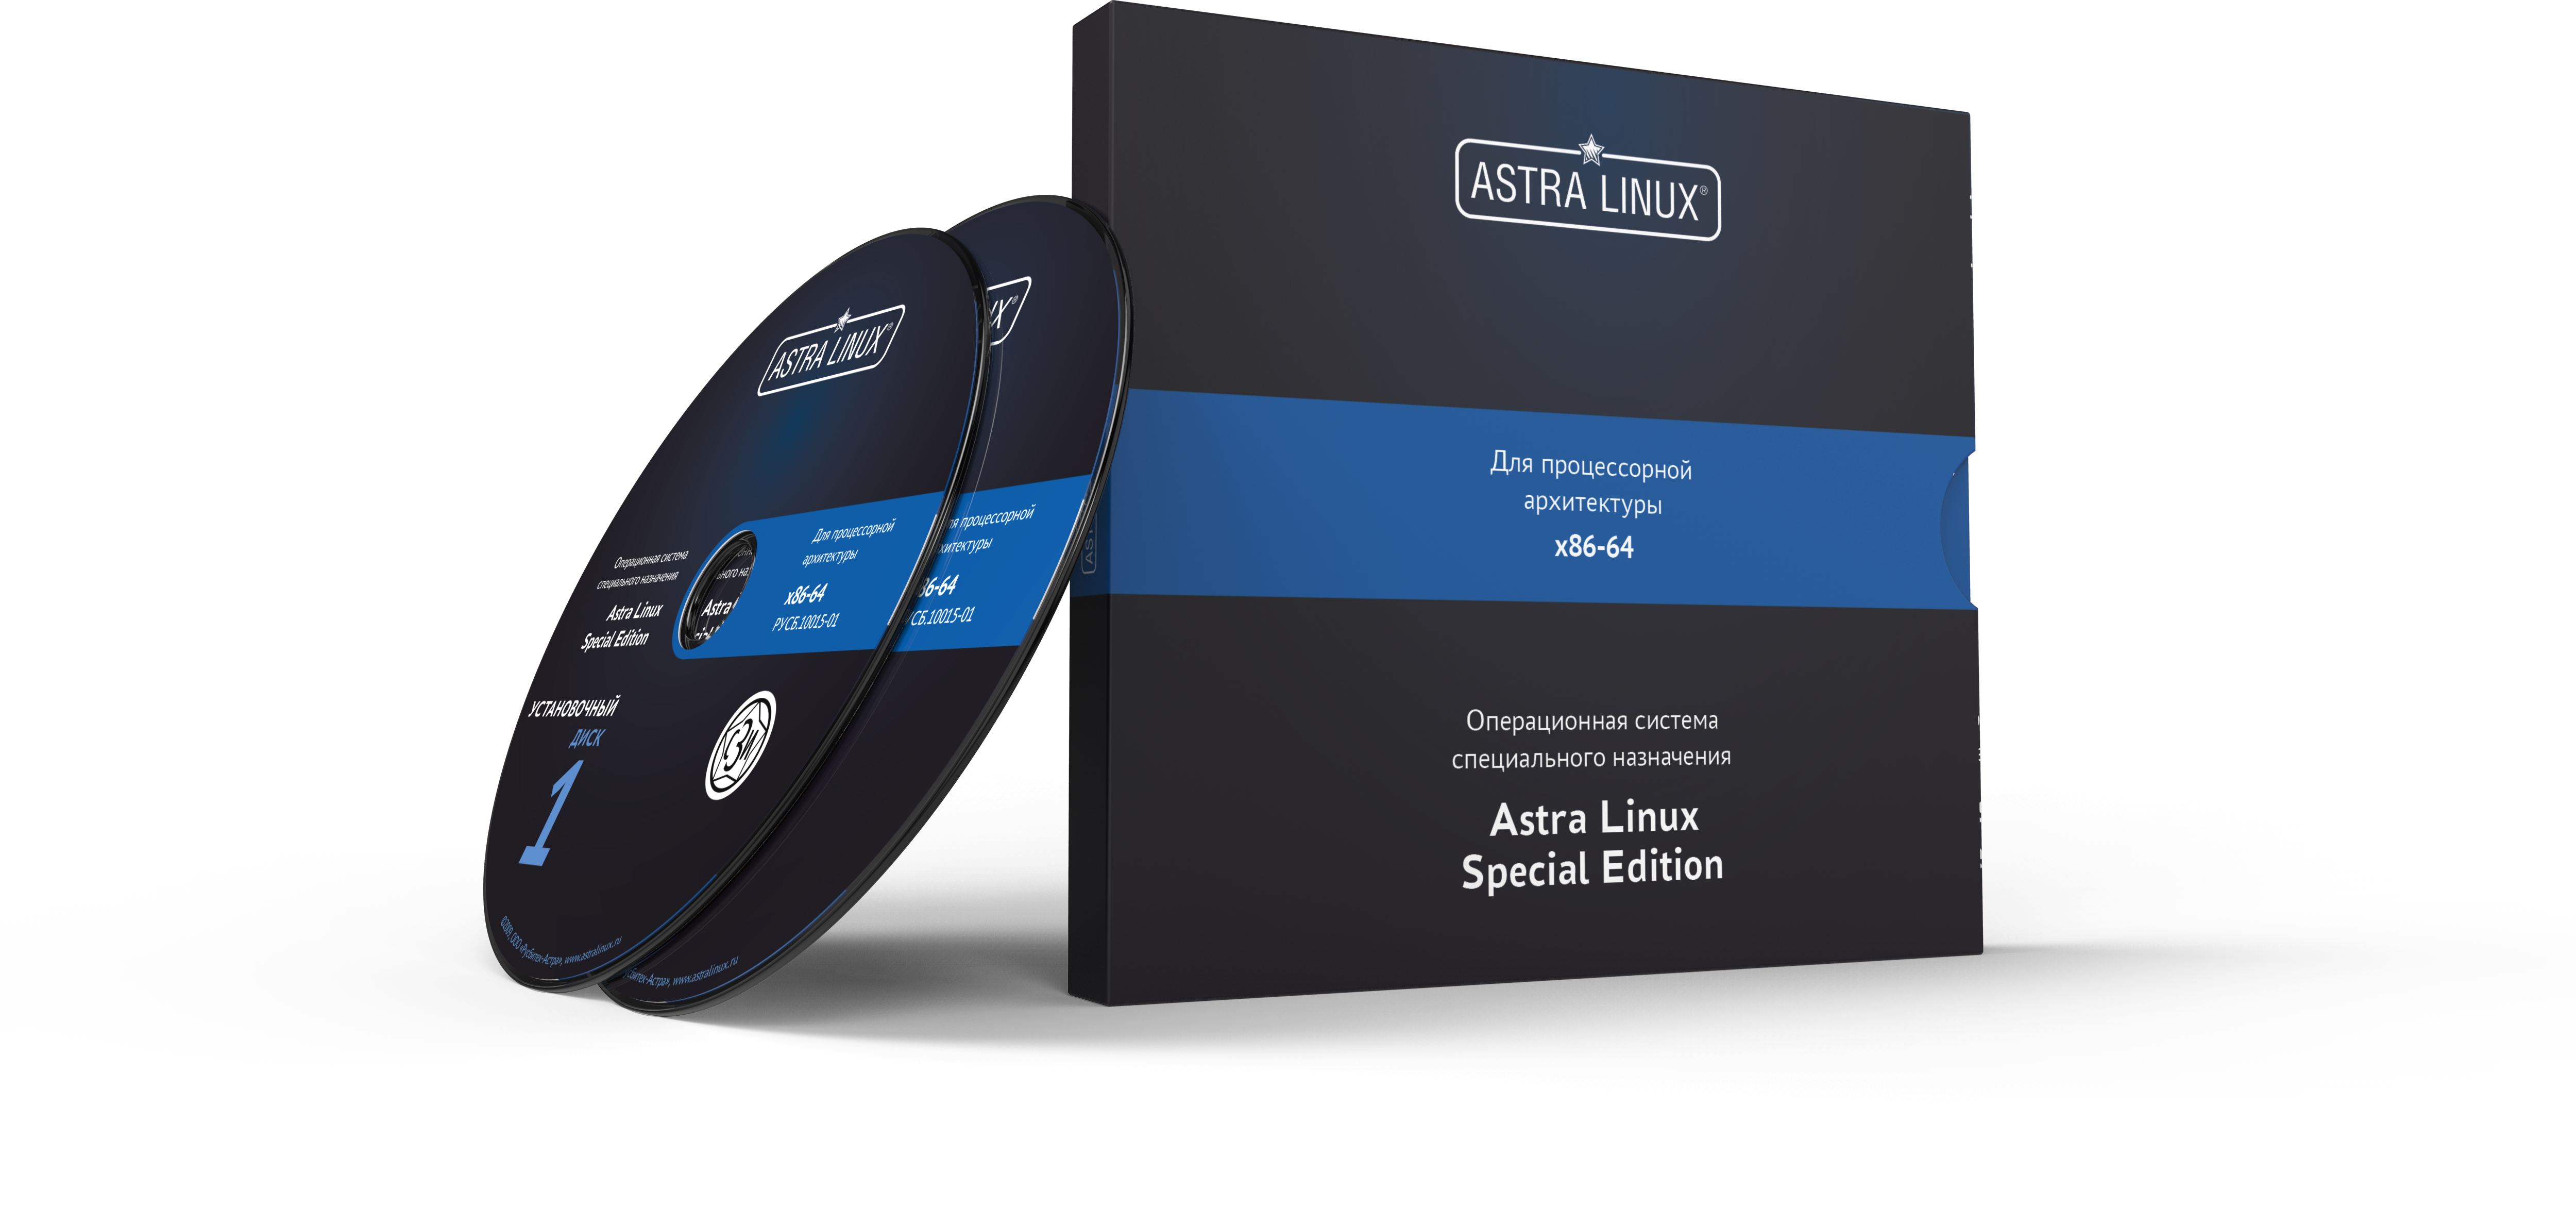 Astra Linux Special Edition 1.7 - Орел, электронный, на 24 мес., ТП "Привилегированная" на 24 мес.